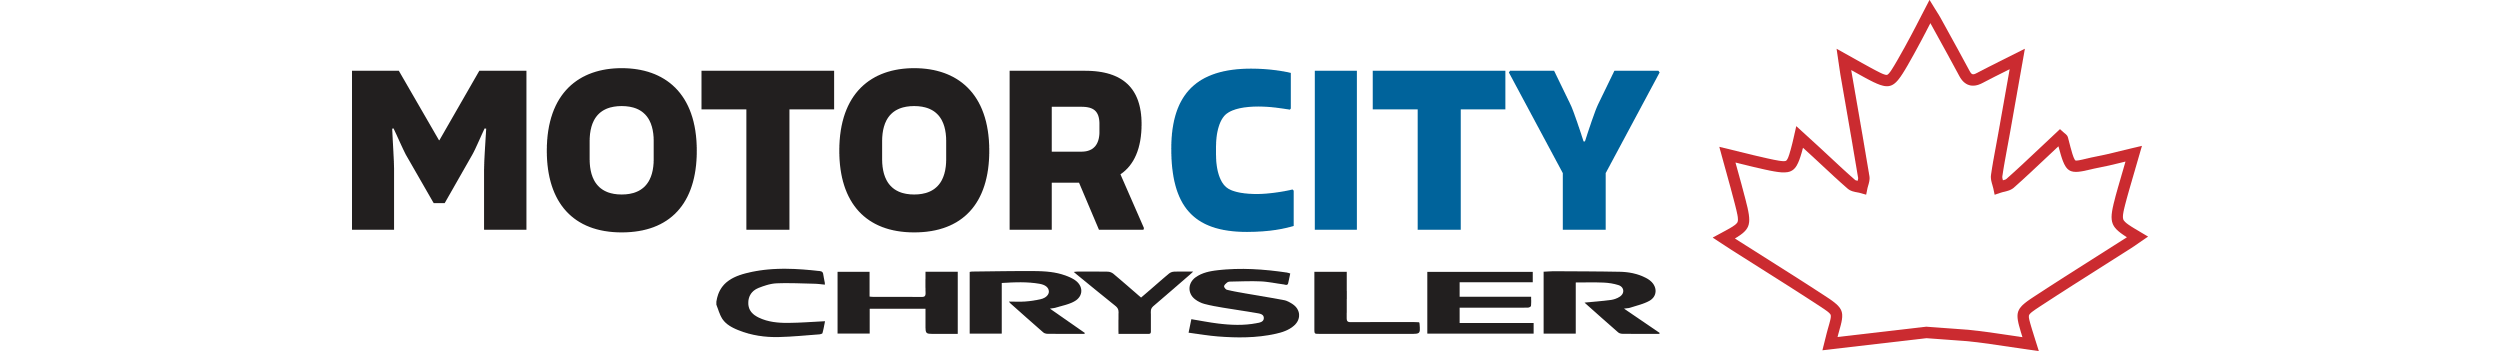 Motor City Chrysler Blog